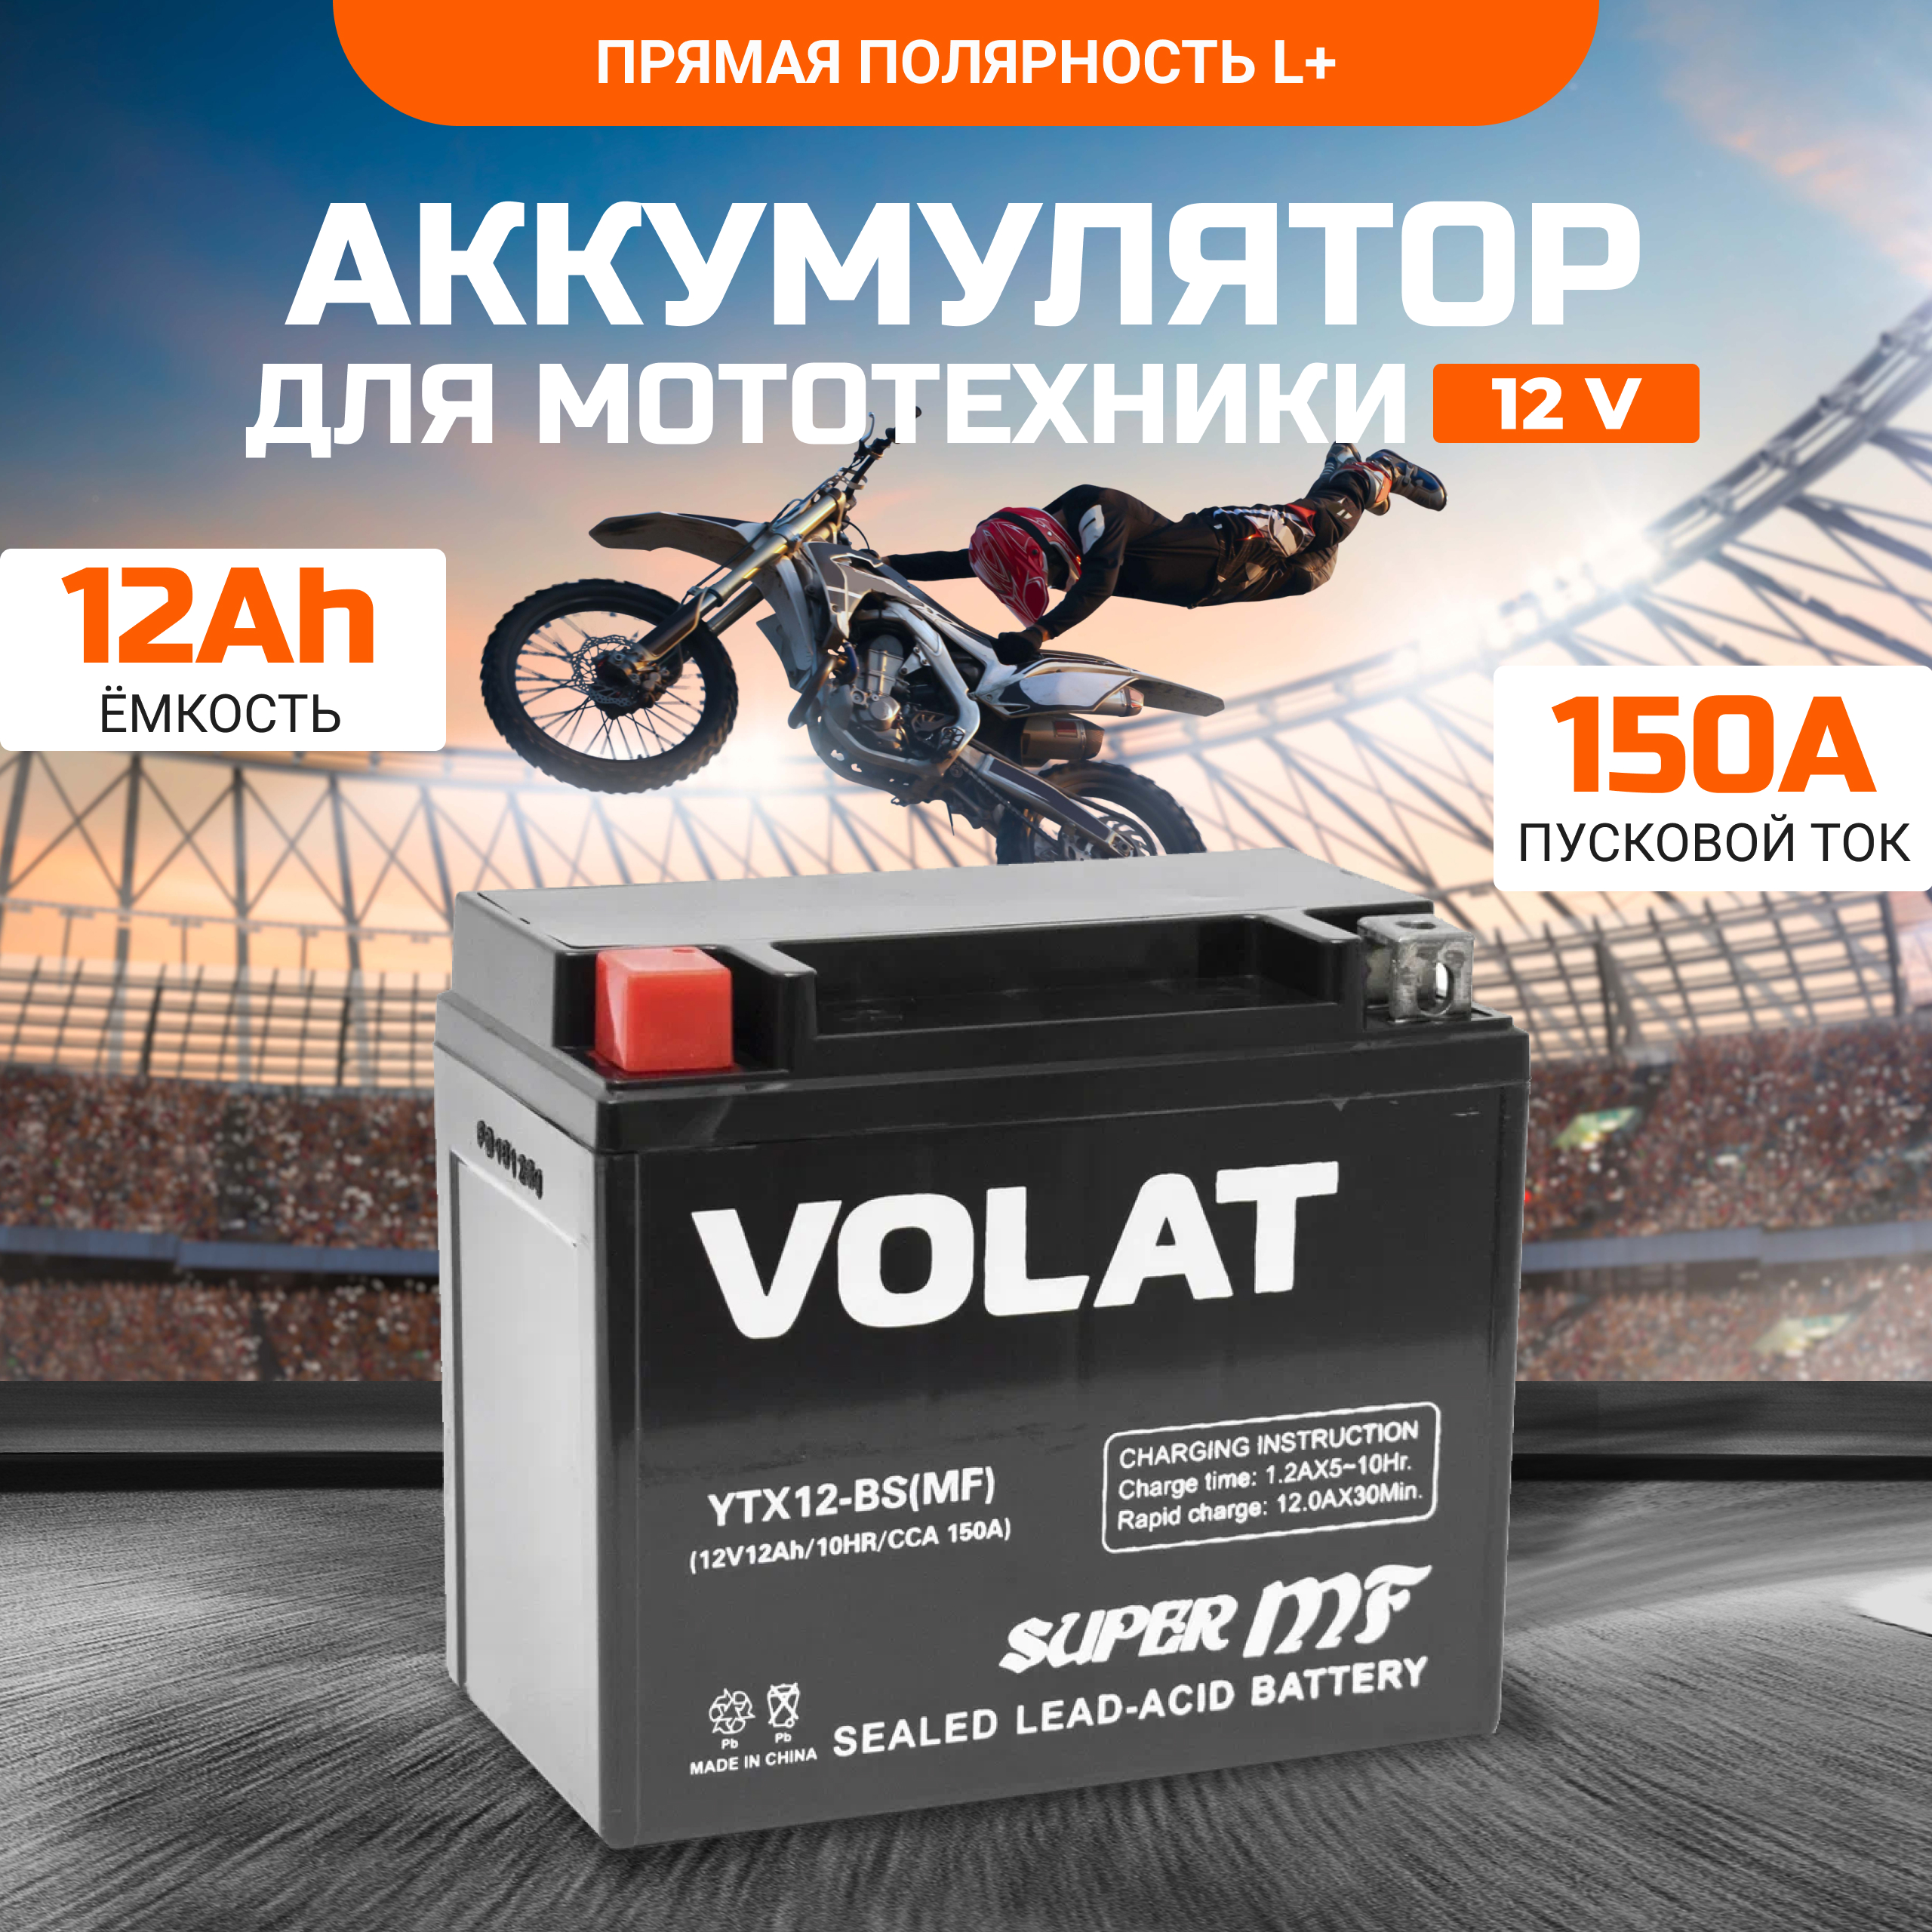 Аккумулятор для мотоцикла VOLAT 12в 12 Ah 150 A прямая полярность YTX12-BS(MF)